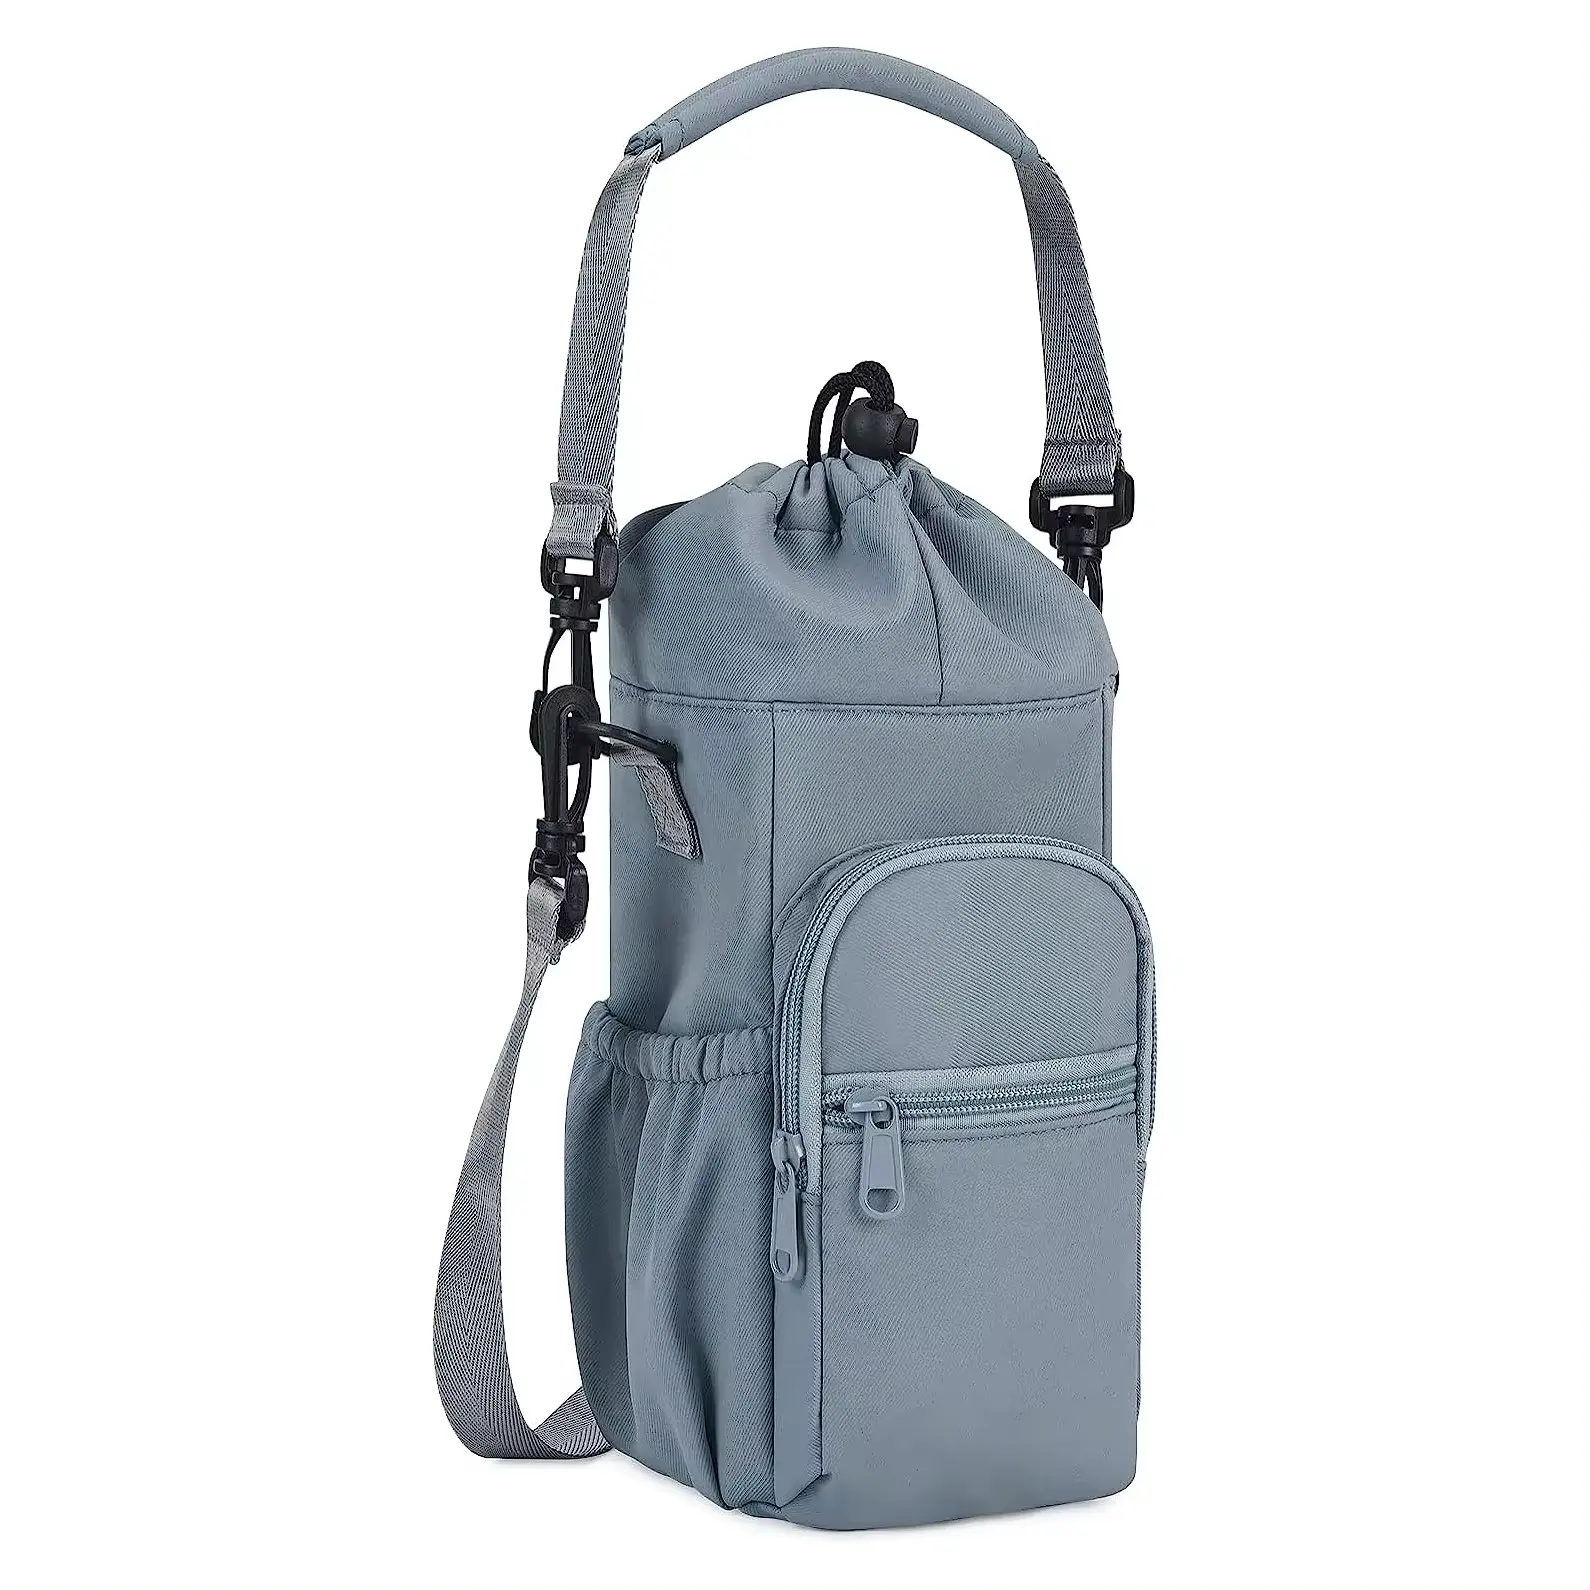 YOUK, bolsa de aislamiento con soporte para botella de agua potable a prueba de agua personalizada, bolsa con correa ajustable, bolsa de bolsillo práctica para teléfono, bolsas enfriadoras